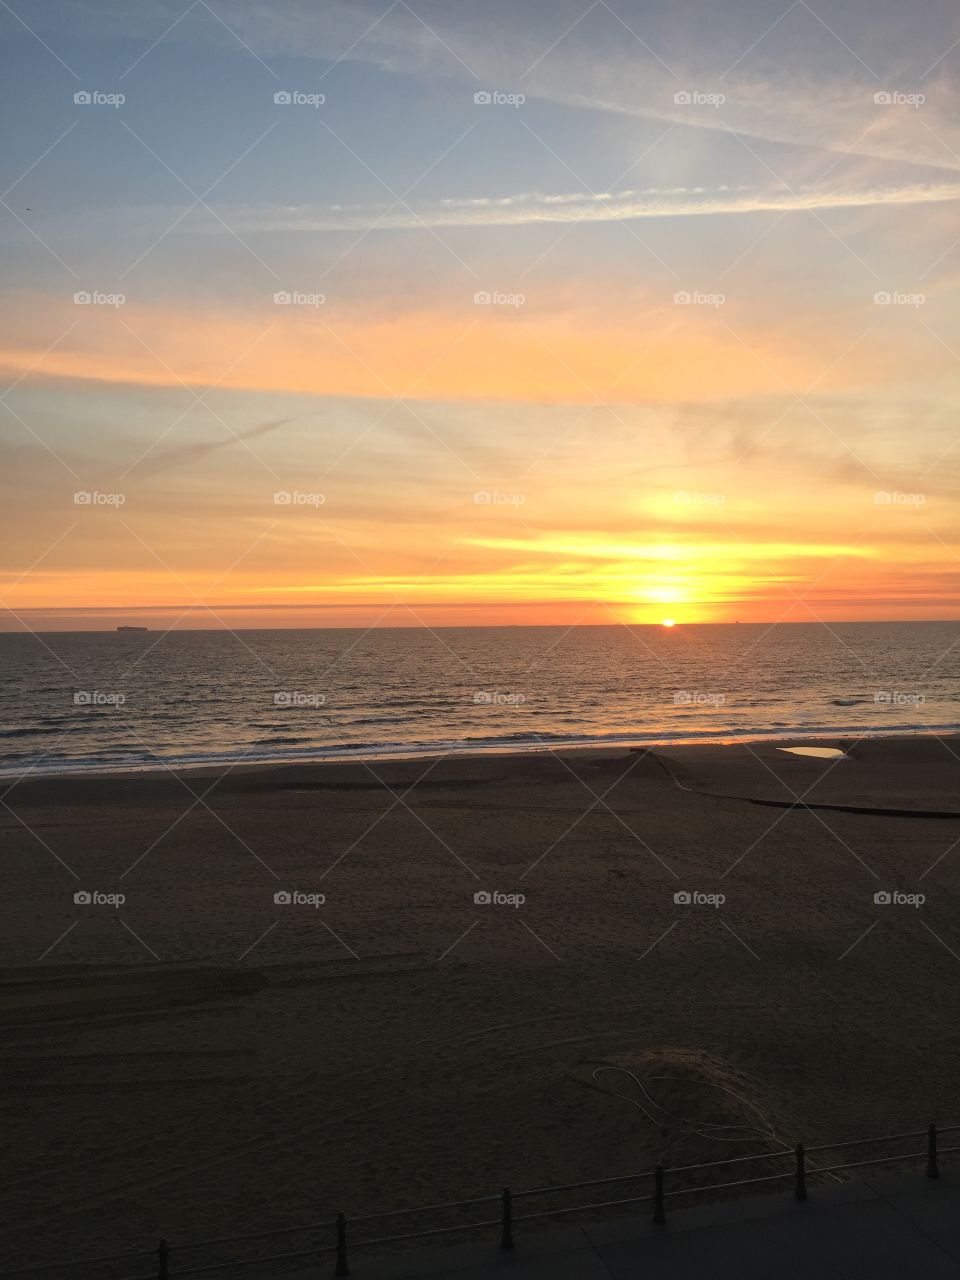 VA beach sunrise 